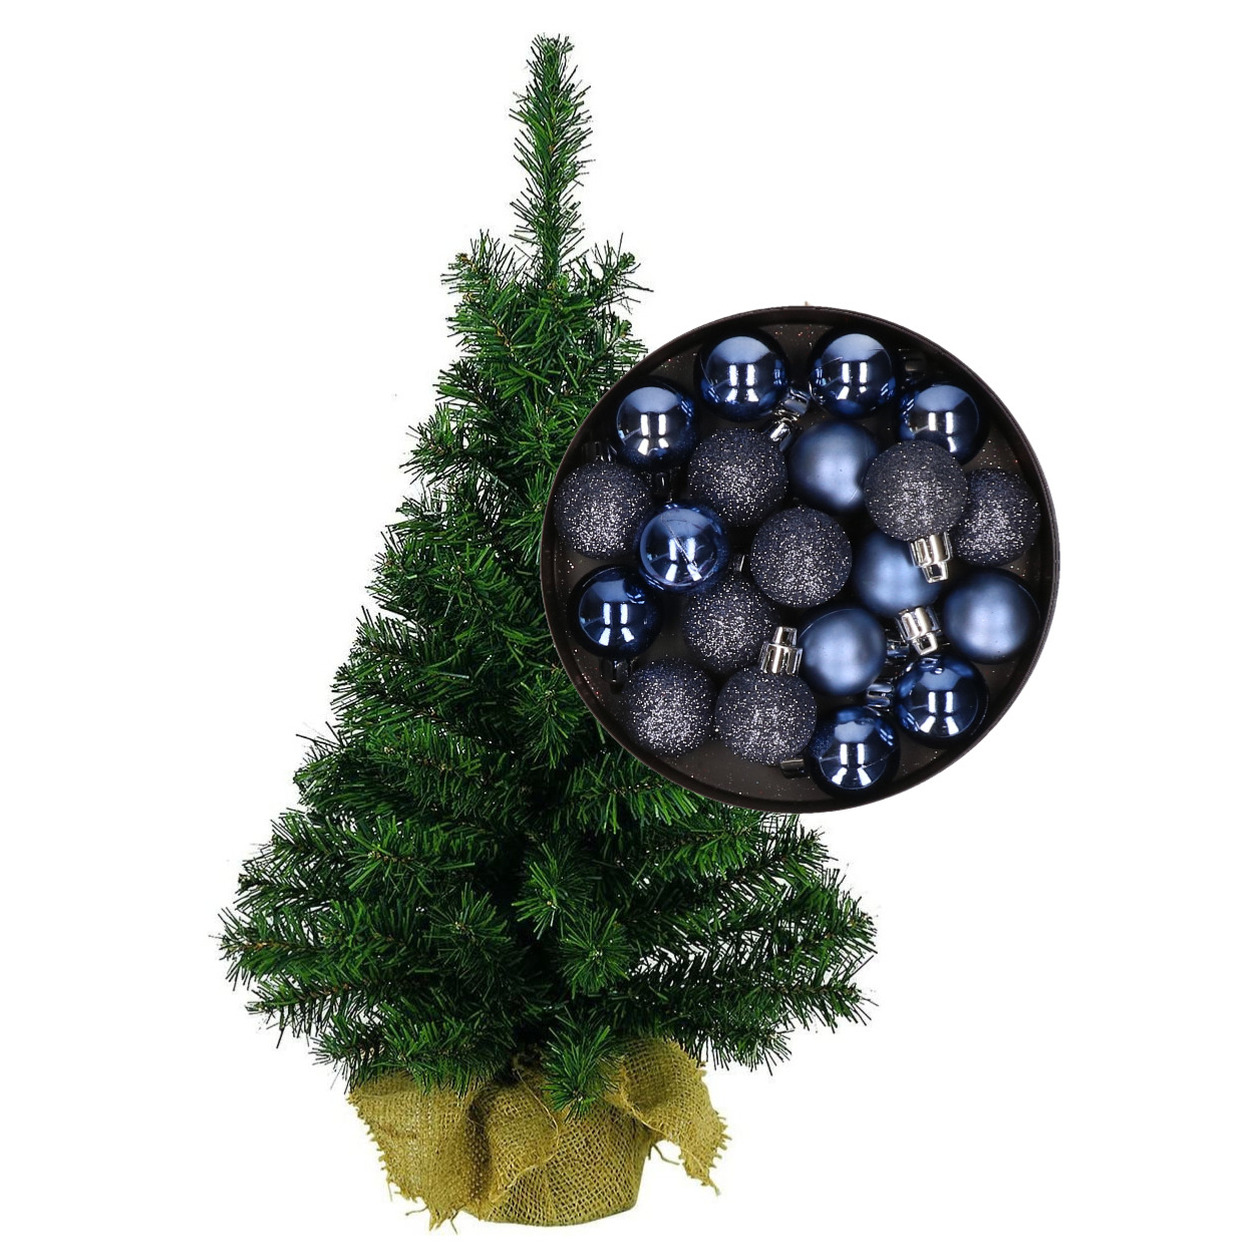 Mini kerstboom/kunst kerstboom H75 cm inclusief kerstballen donkerblauw